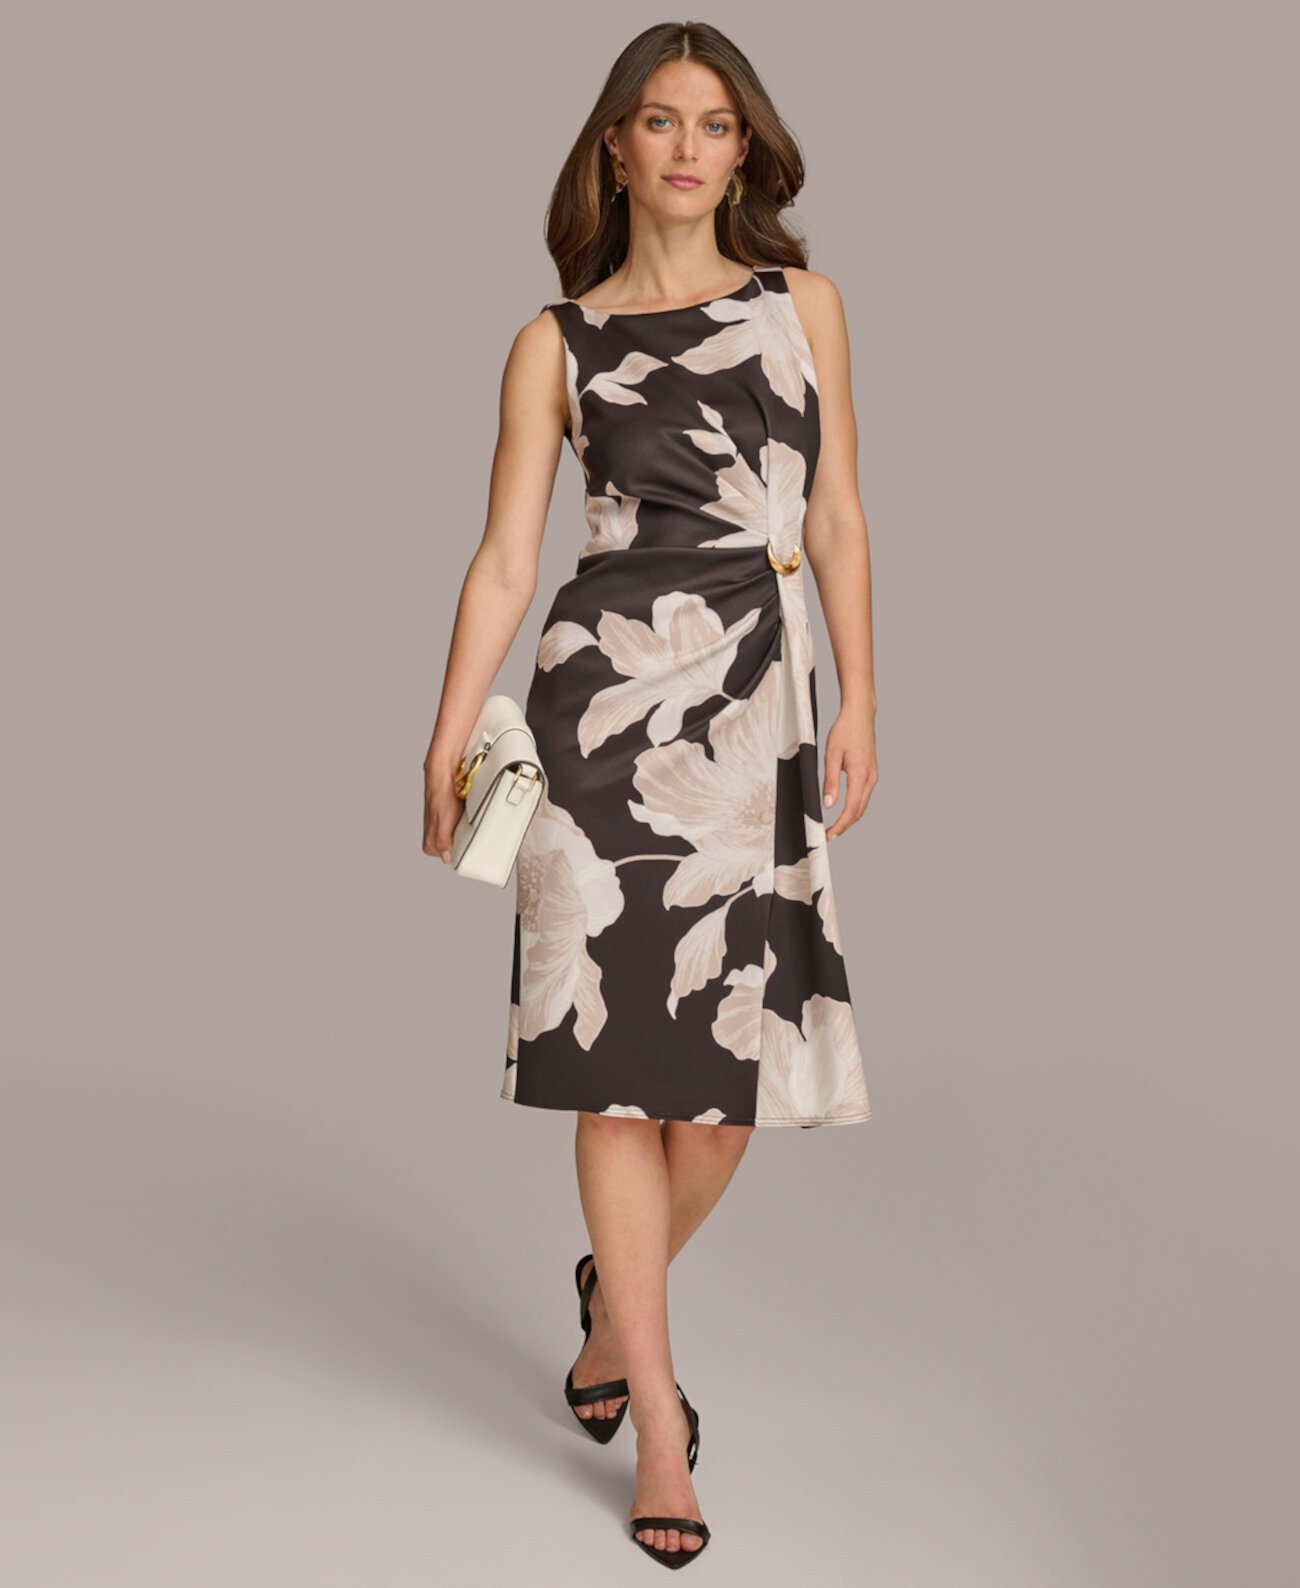 Donn Karan Women's Floral Side-Ruched Sleeveless Dress Donna Karan New York